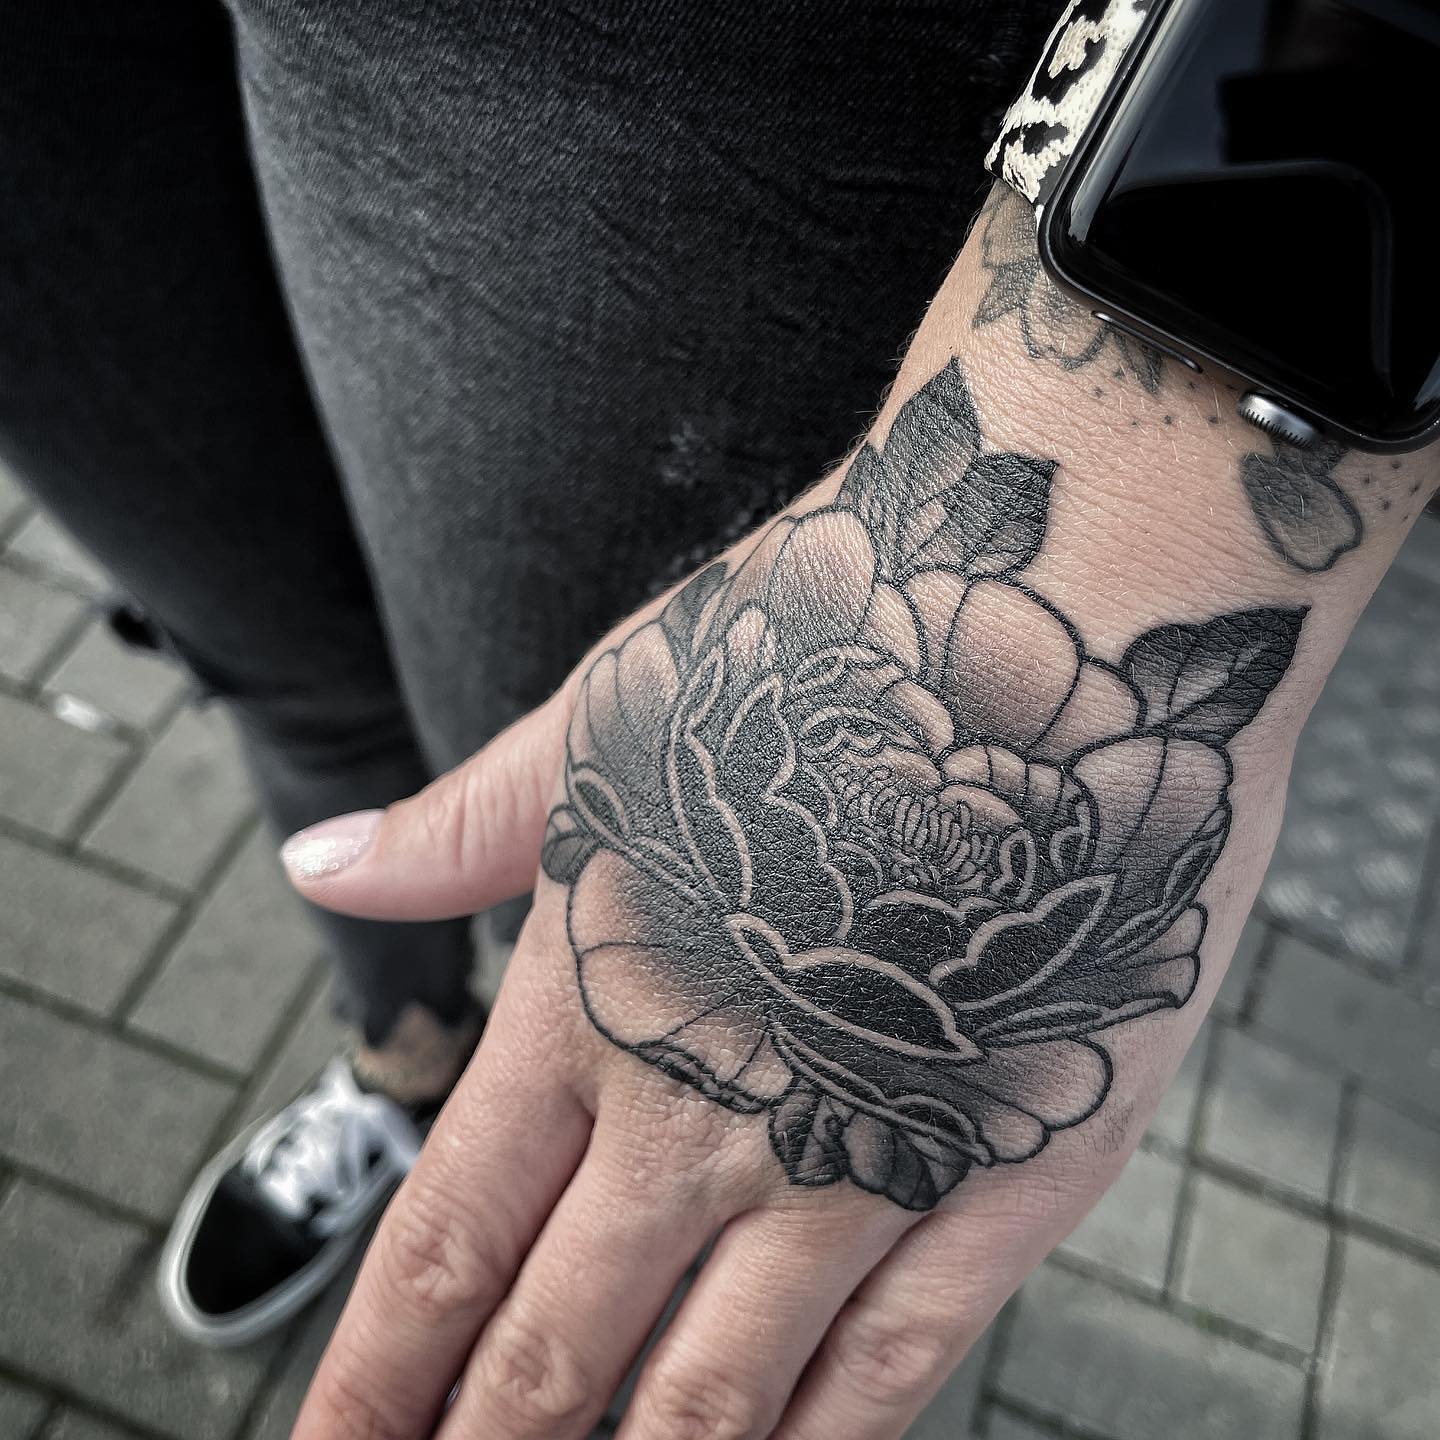 Hand Tattoo von @ronraida gestochen…. Danke an die weltbeste @kimberly.hedwig  #